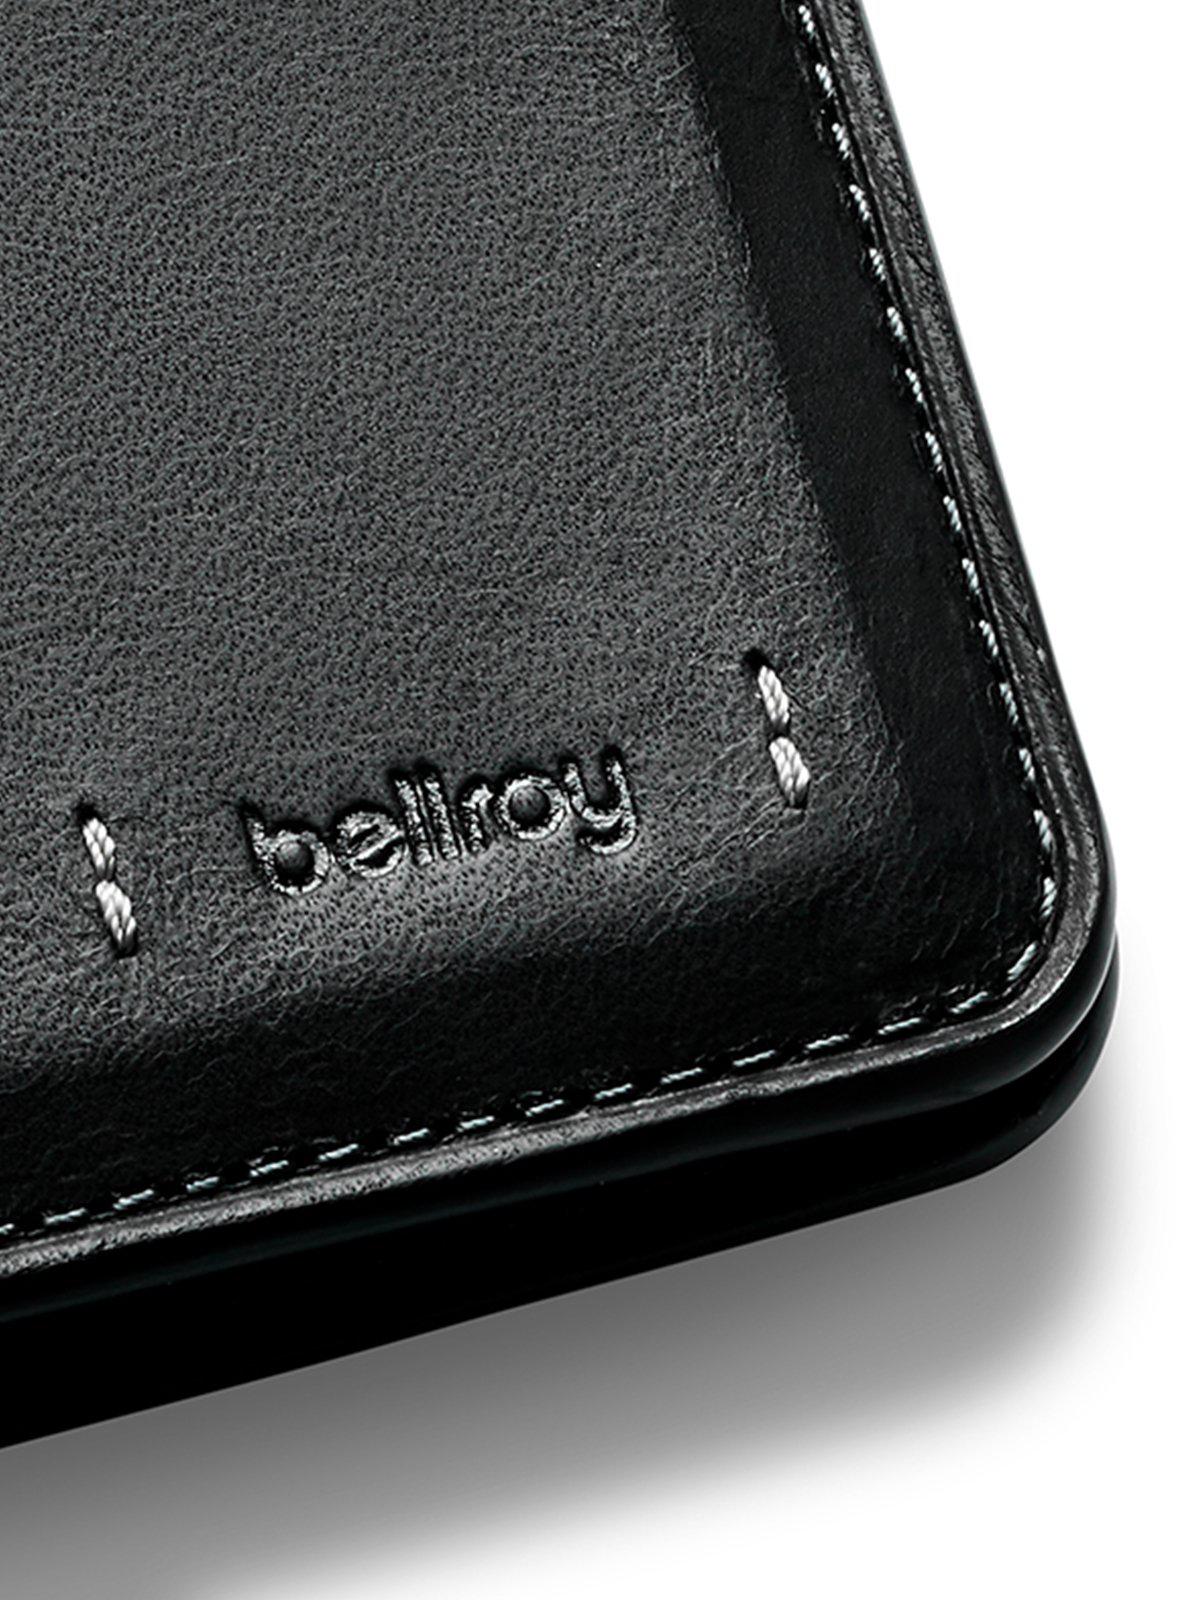 Bellroy Hide and Seek Wallet Premium Edition Black